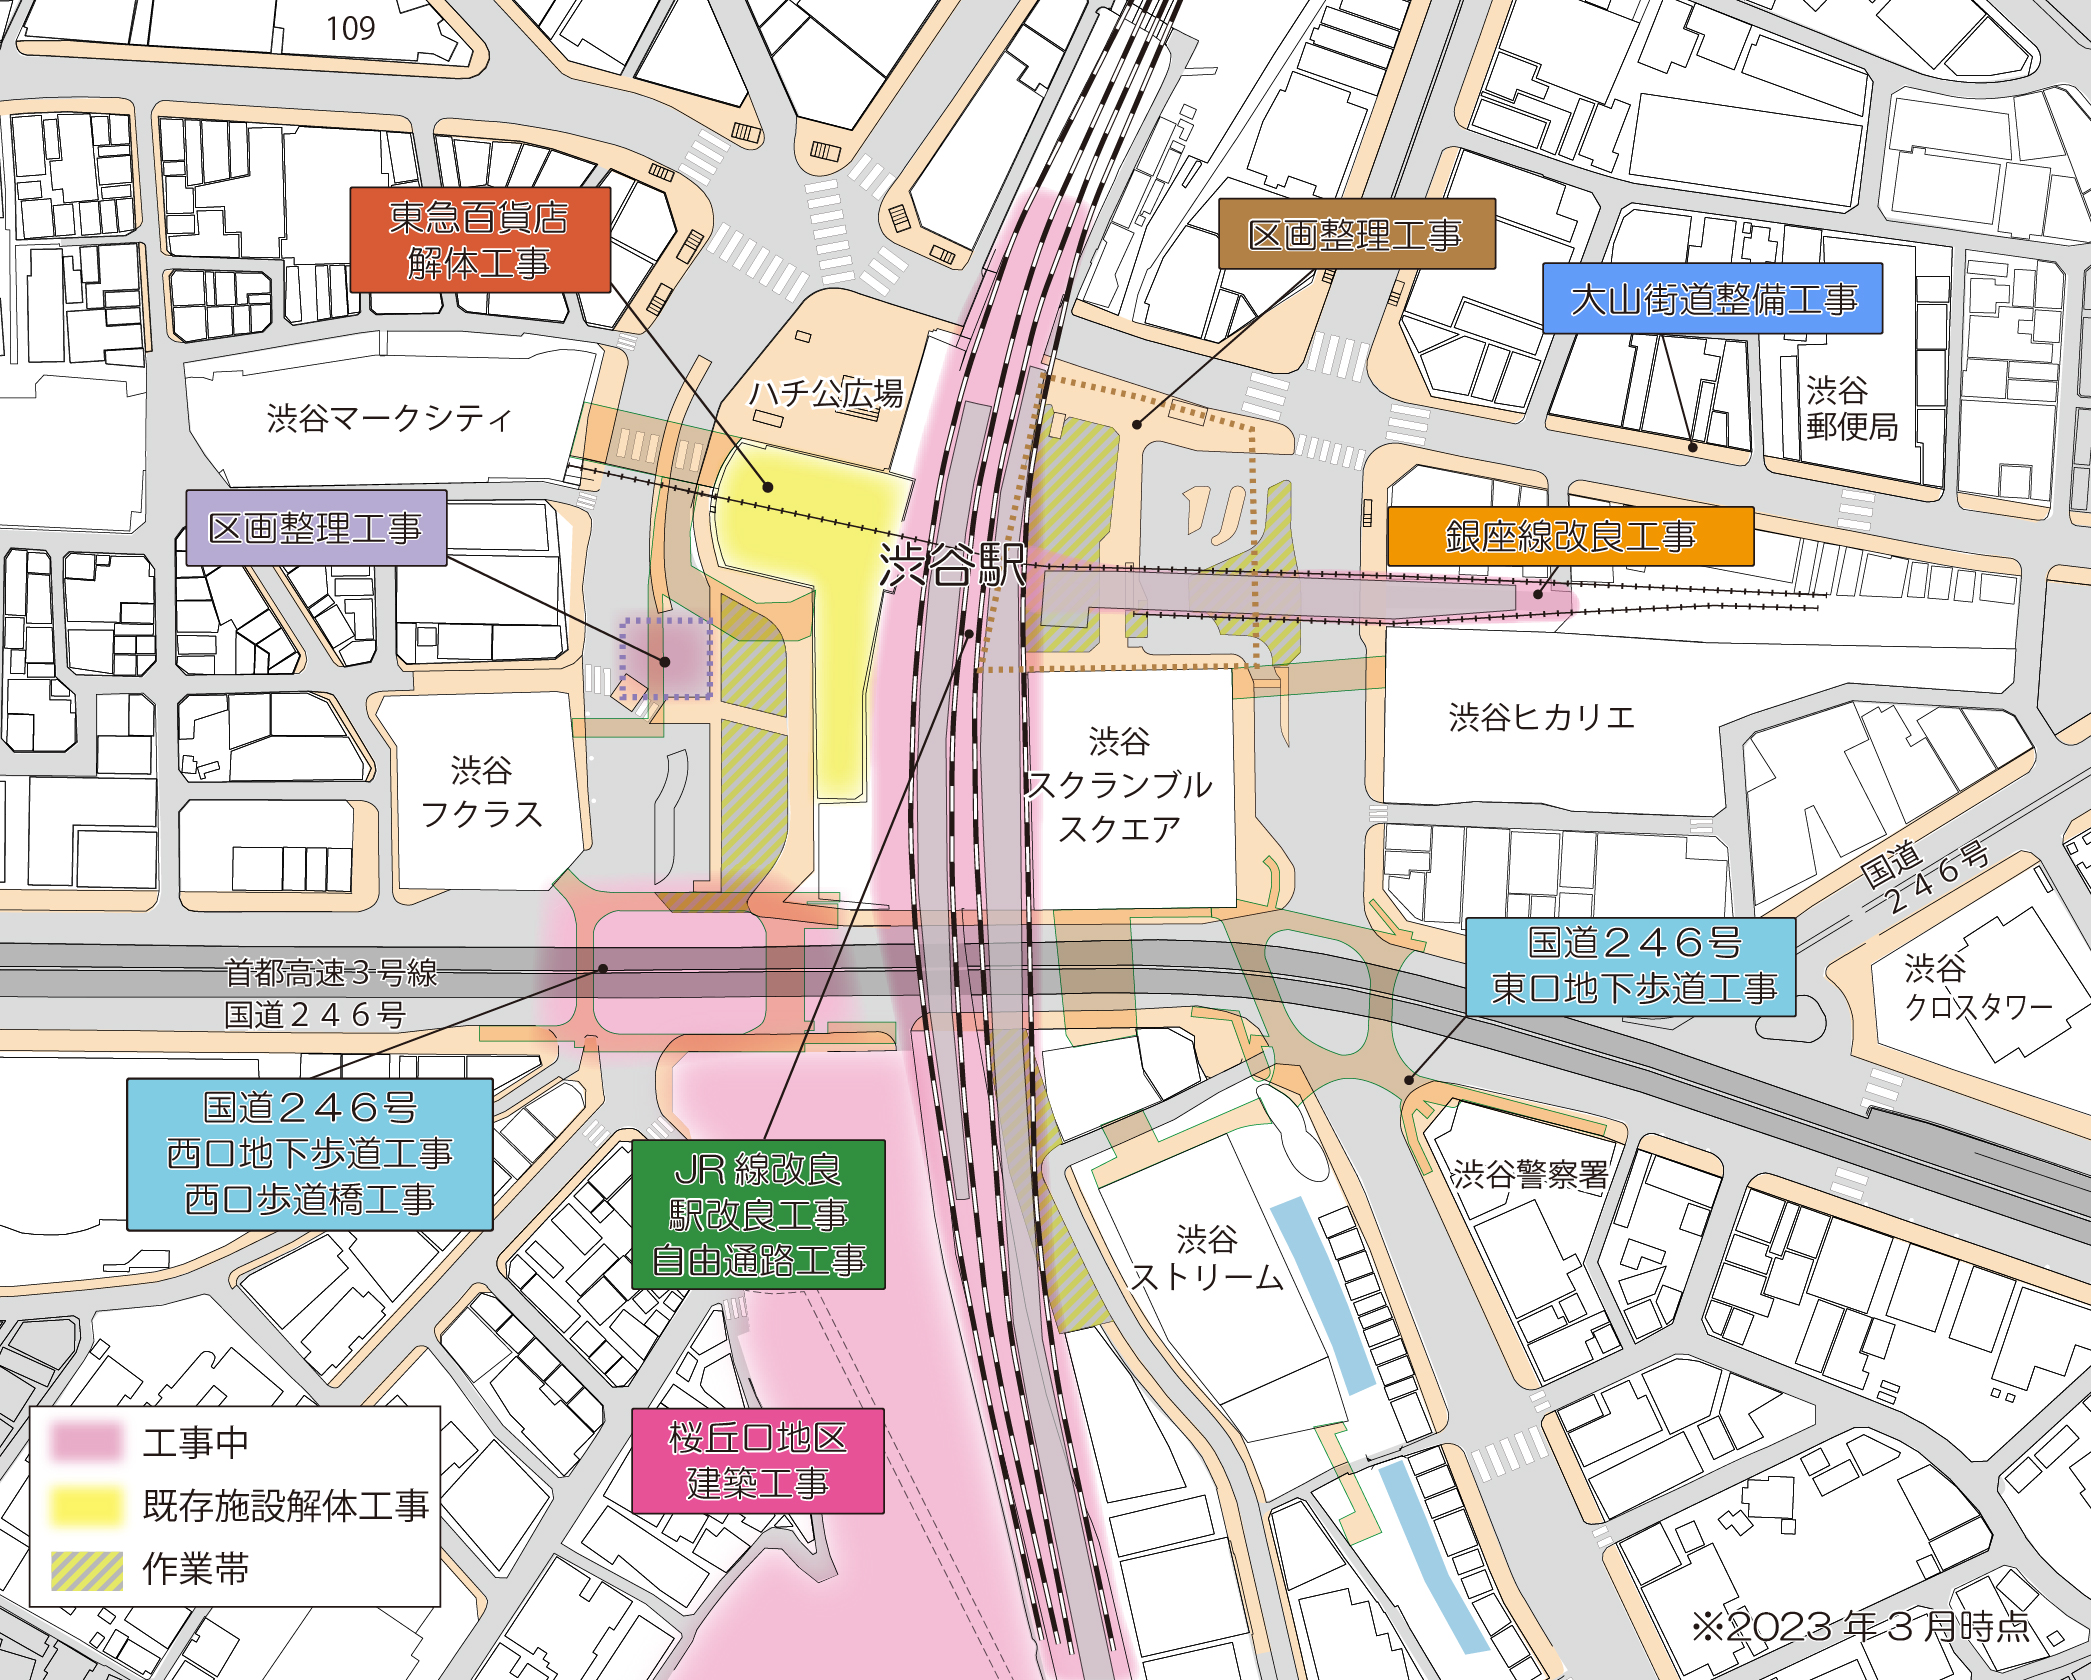 現在の渋谷駅周辺の状況マップ